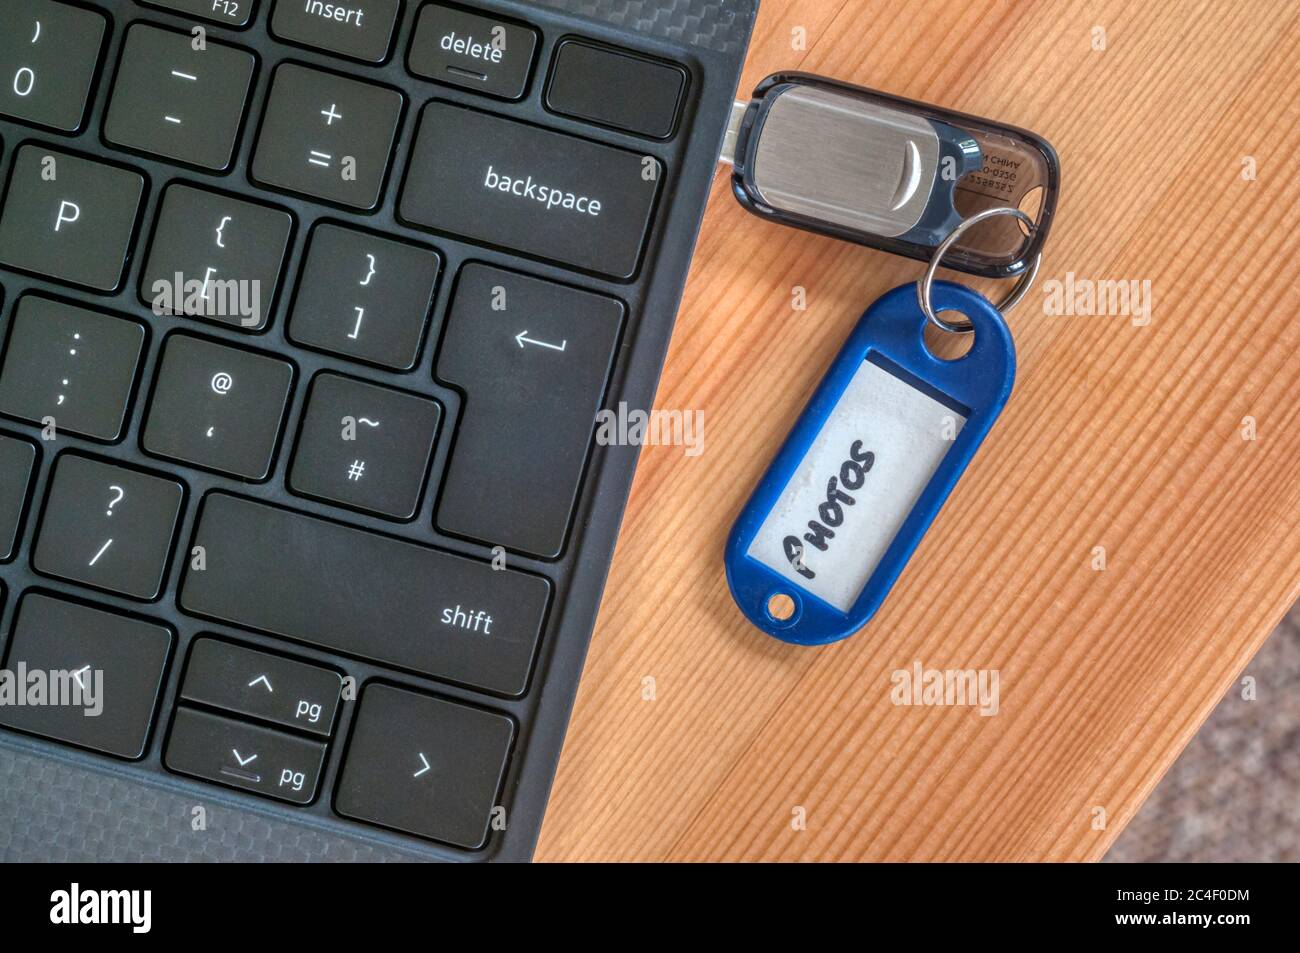 Photos stockées sur une clé USB sur le côté d'un ordinateur portable. Banque D'Images